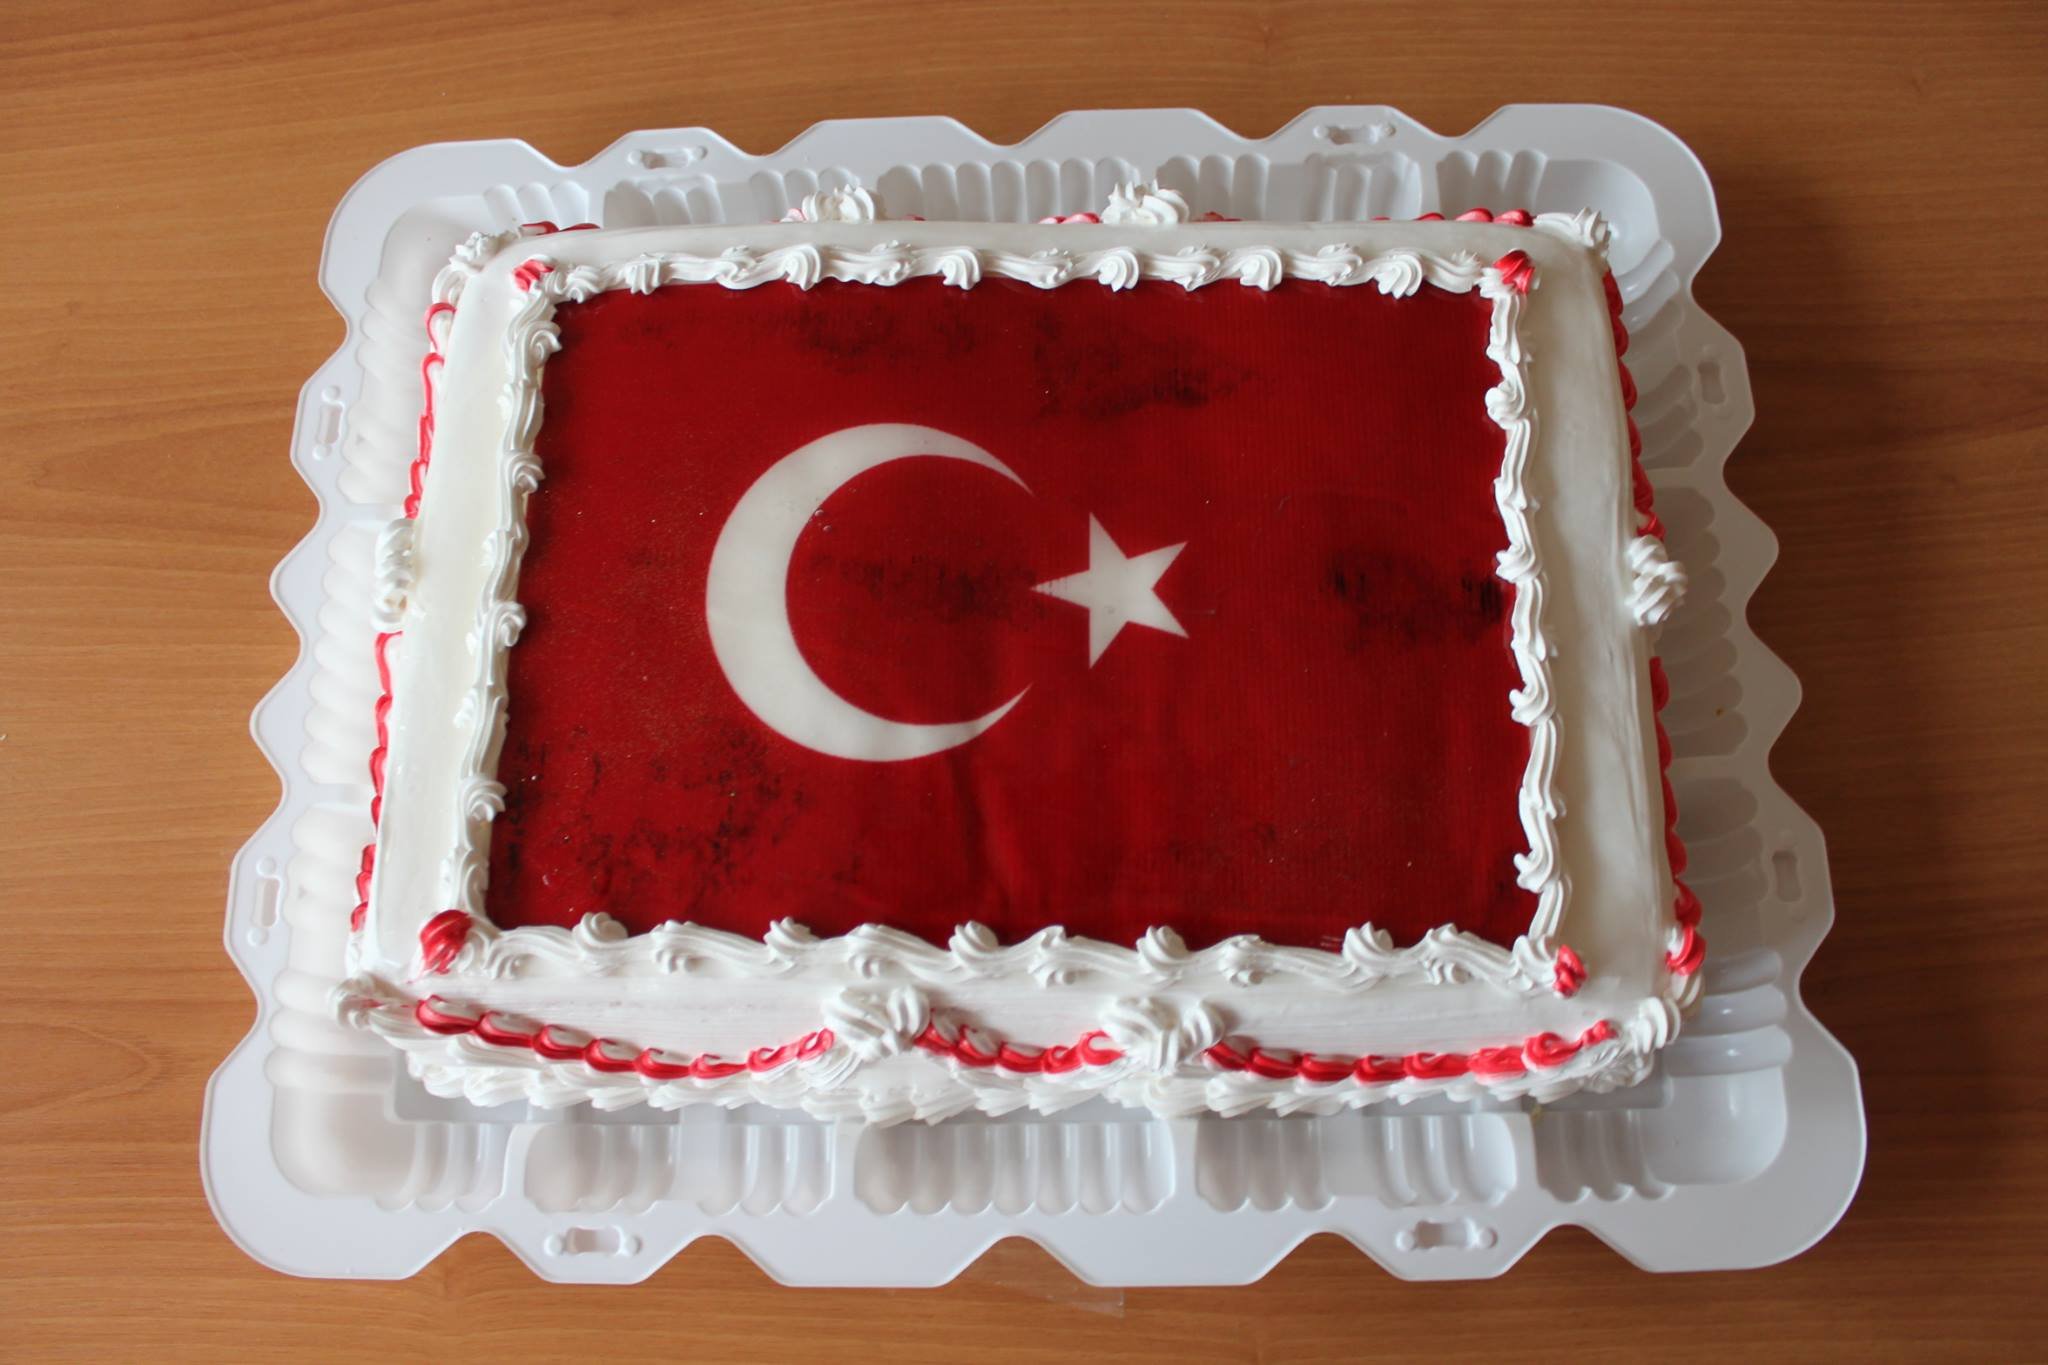 С днем рождения мужчине турецкий. С днём рождения мужчине на турецком. С днём рождения на турецком языке мужчине. С дне рождения мужчине на турецком. Поздравить с днём рождения на турецком языке.